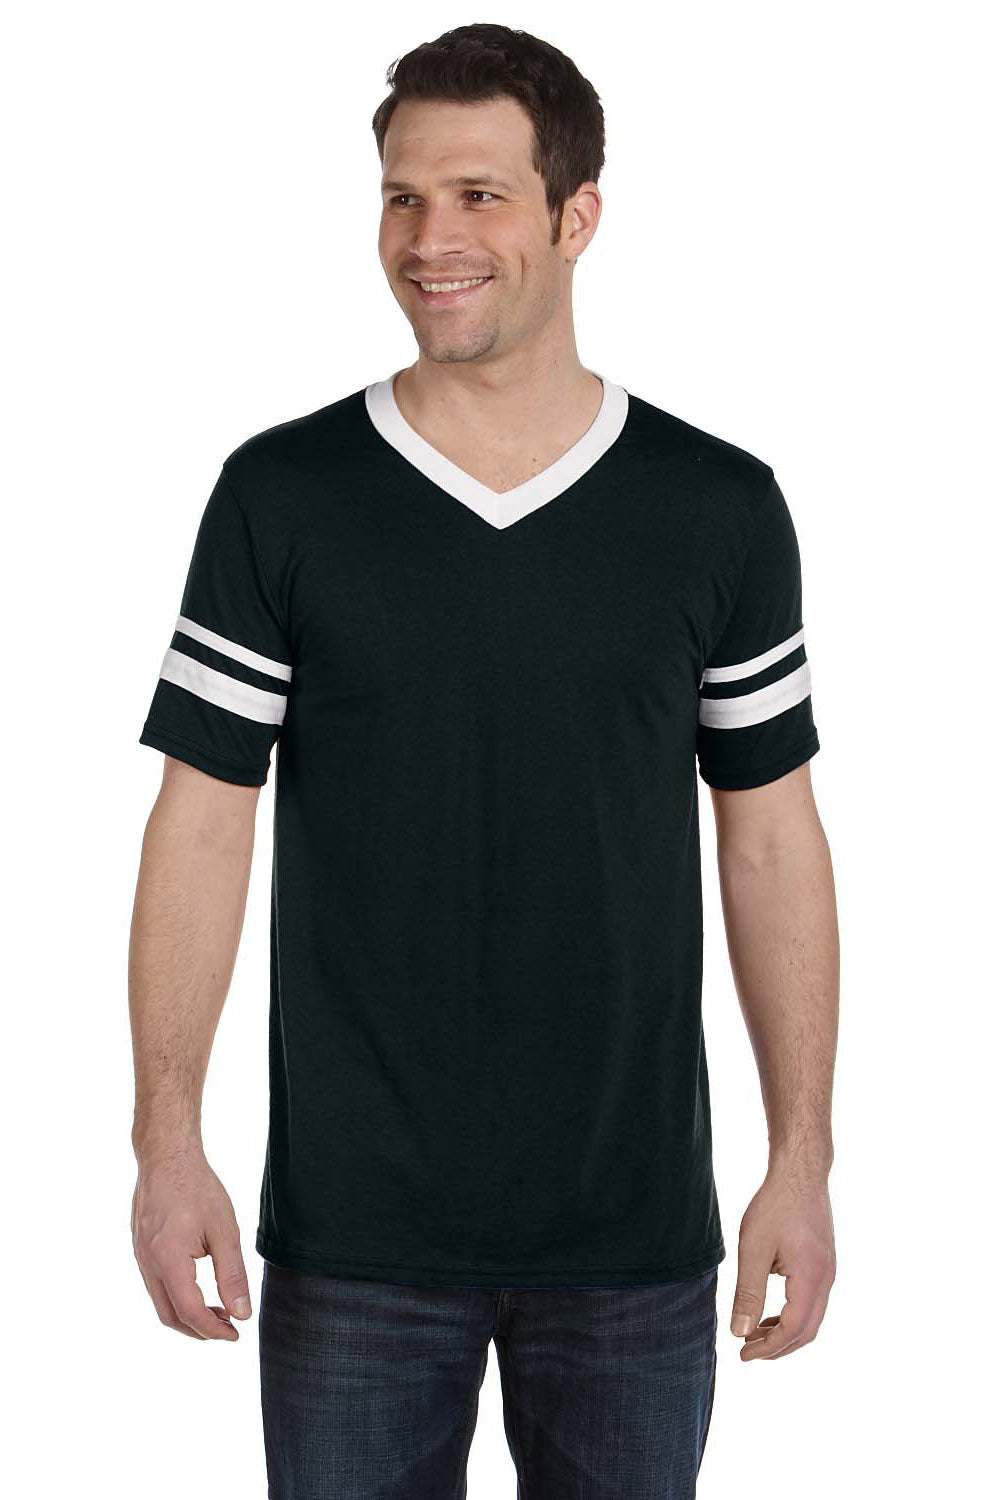 Augusta Sportswear 360 Mens Short Sleeve V-Neck T-Shirt Black/White Model Front